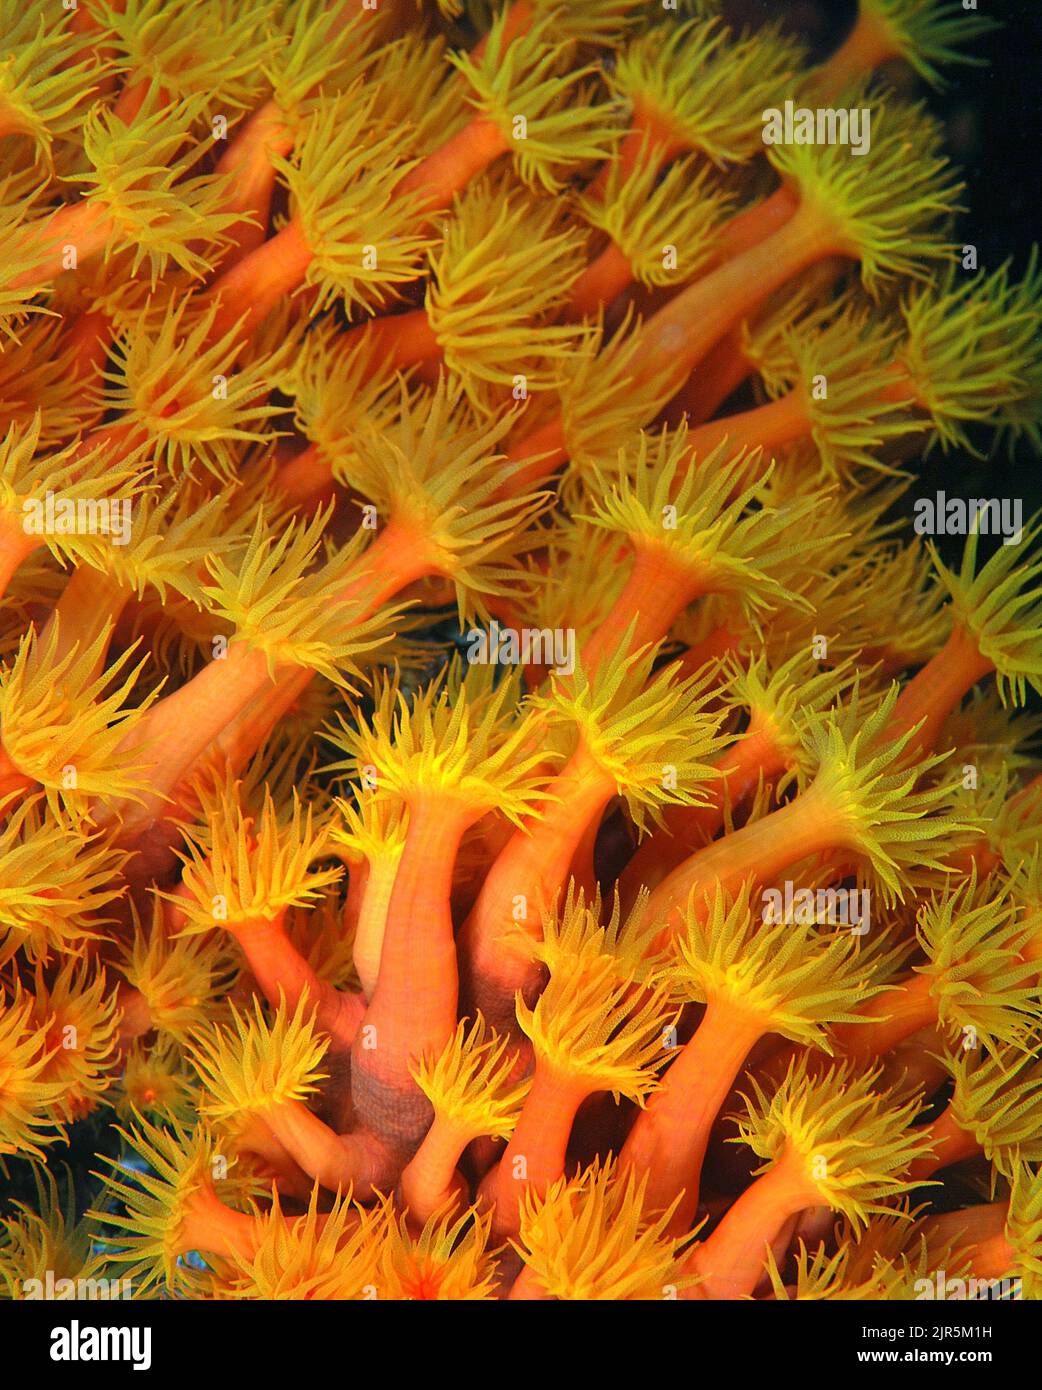 Corallo a tubo arancione o corallo di coppa (Tubastrea coccinea), si verificano in colonie che condividono una base scheletrica e tessuto comune, Indonesia, Asia Foto Stock